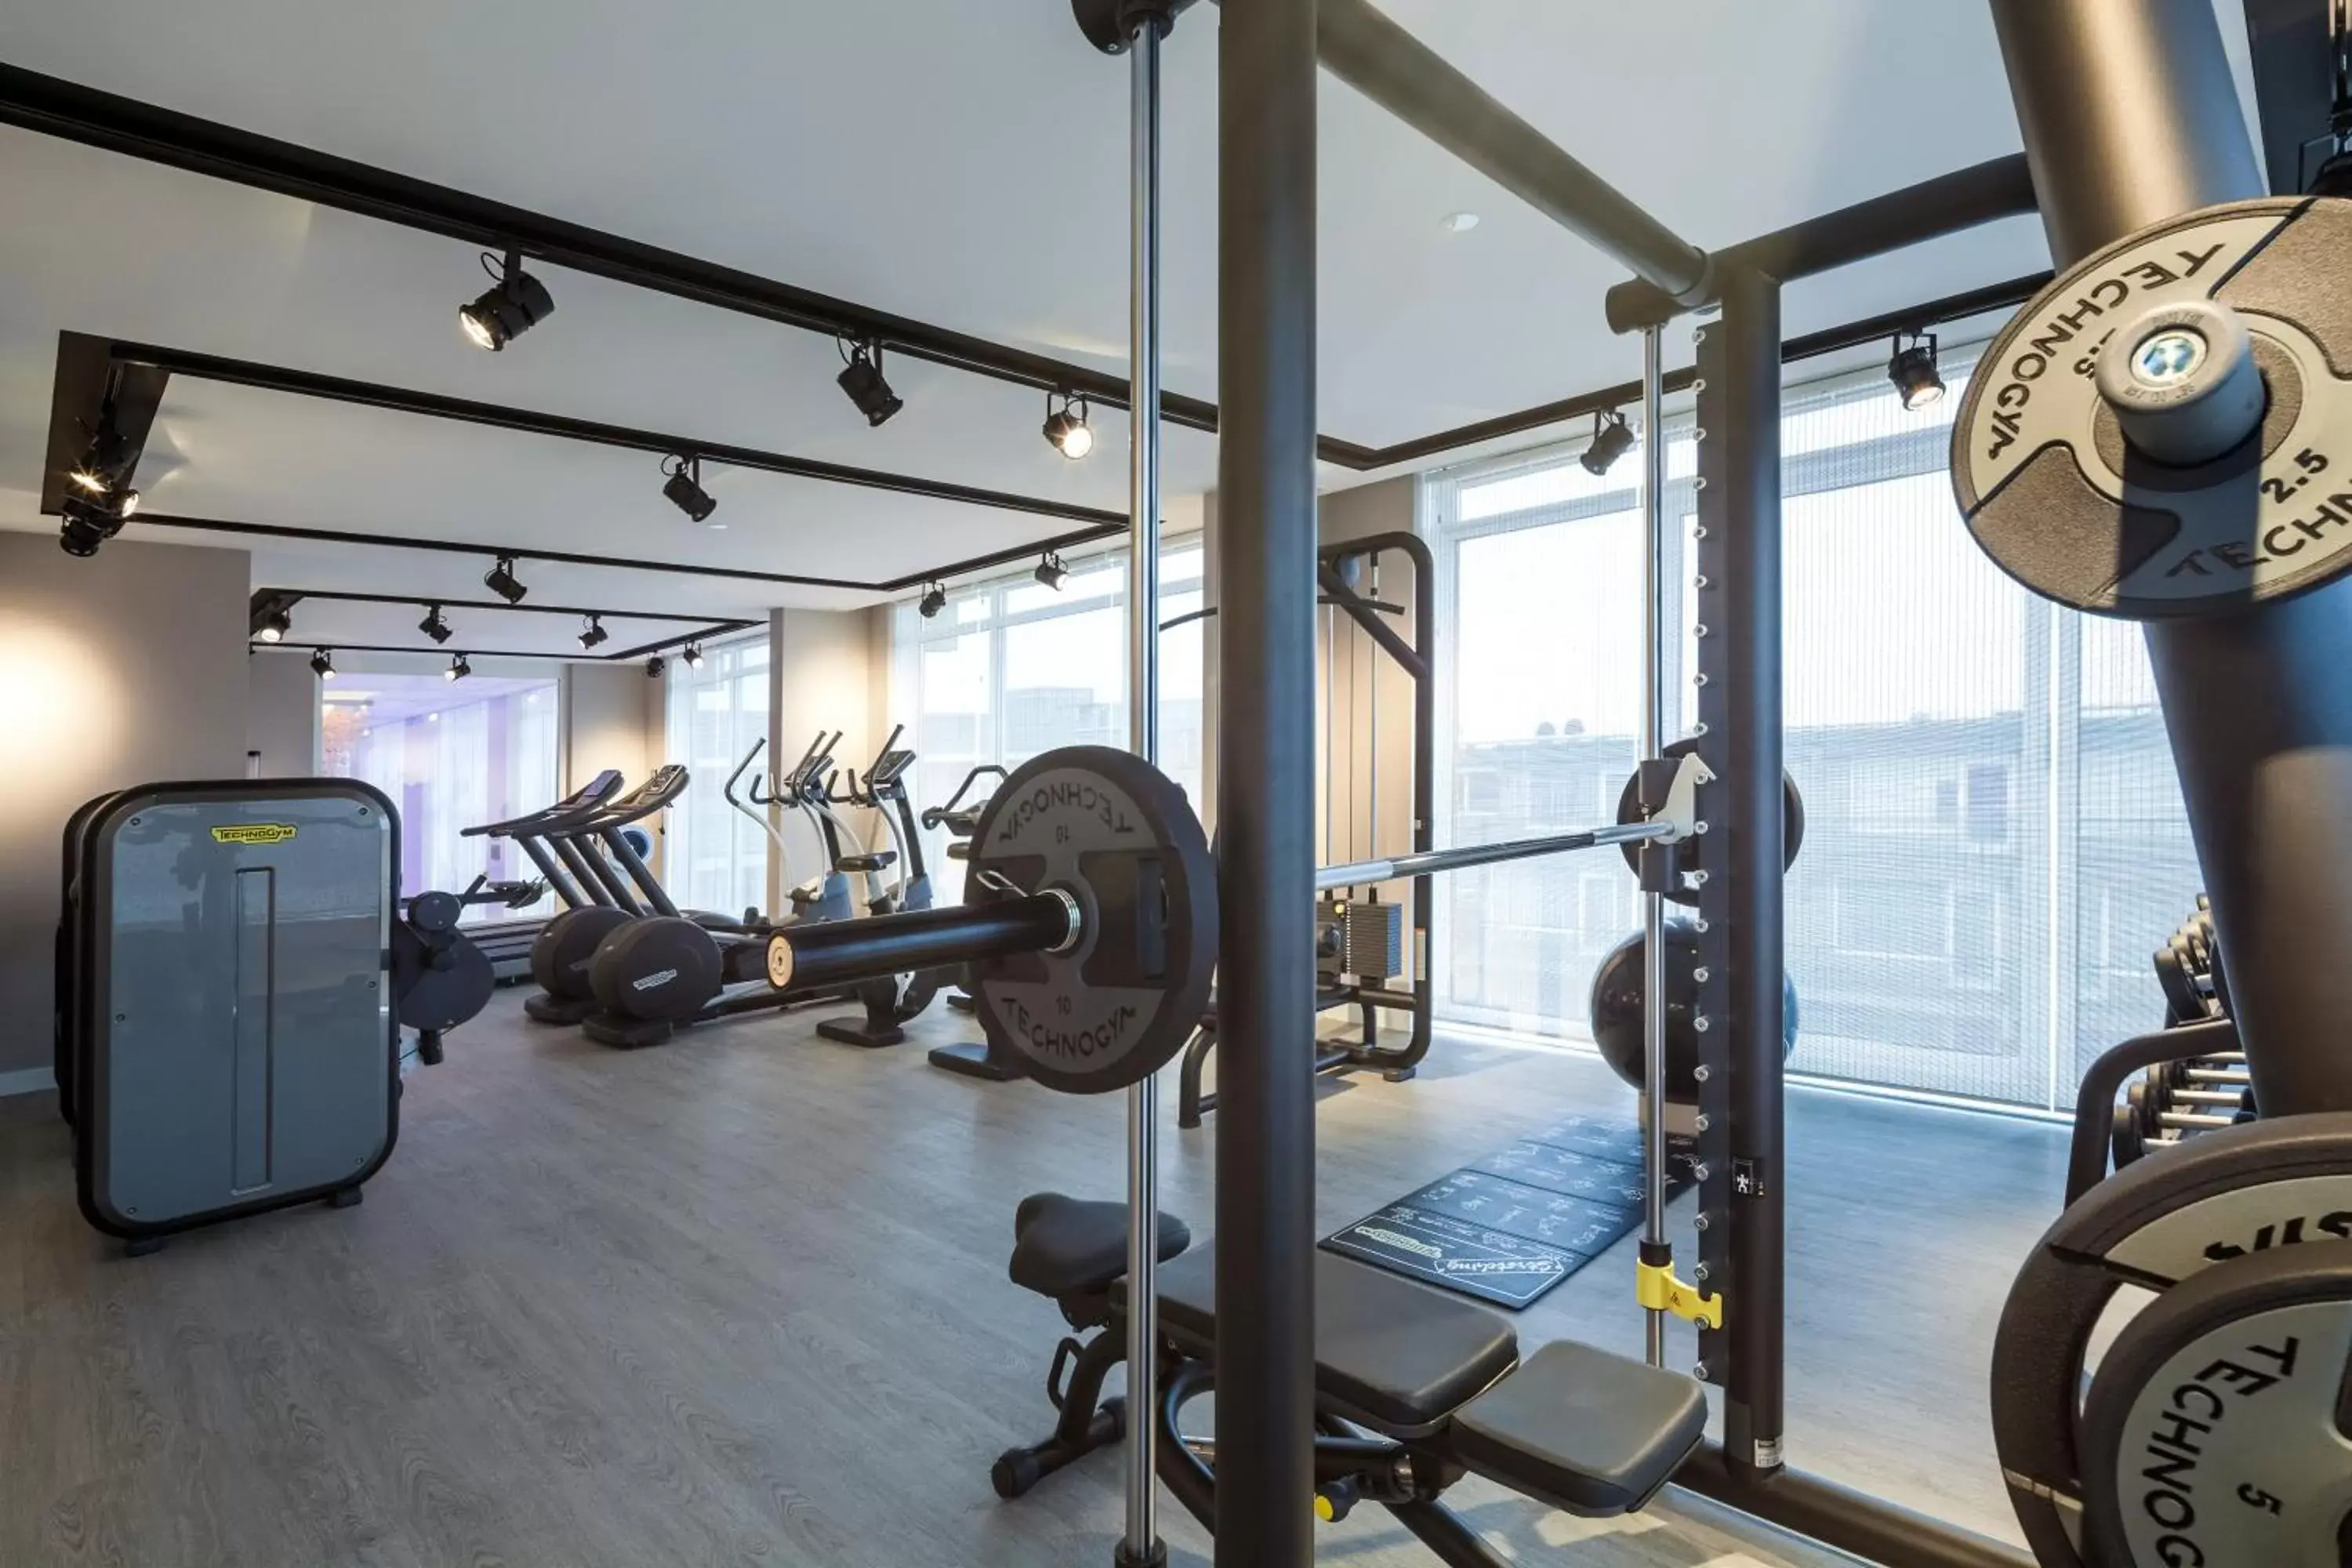 Fitness centre/facilities, Fitness Center/Facilities in Van der Valk Hotel Vianen - Utrecht